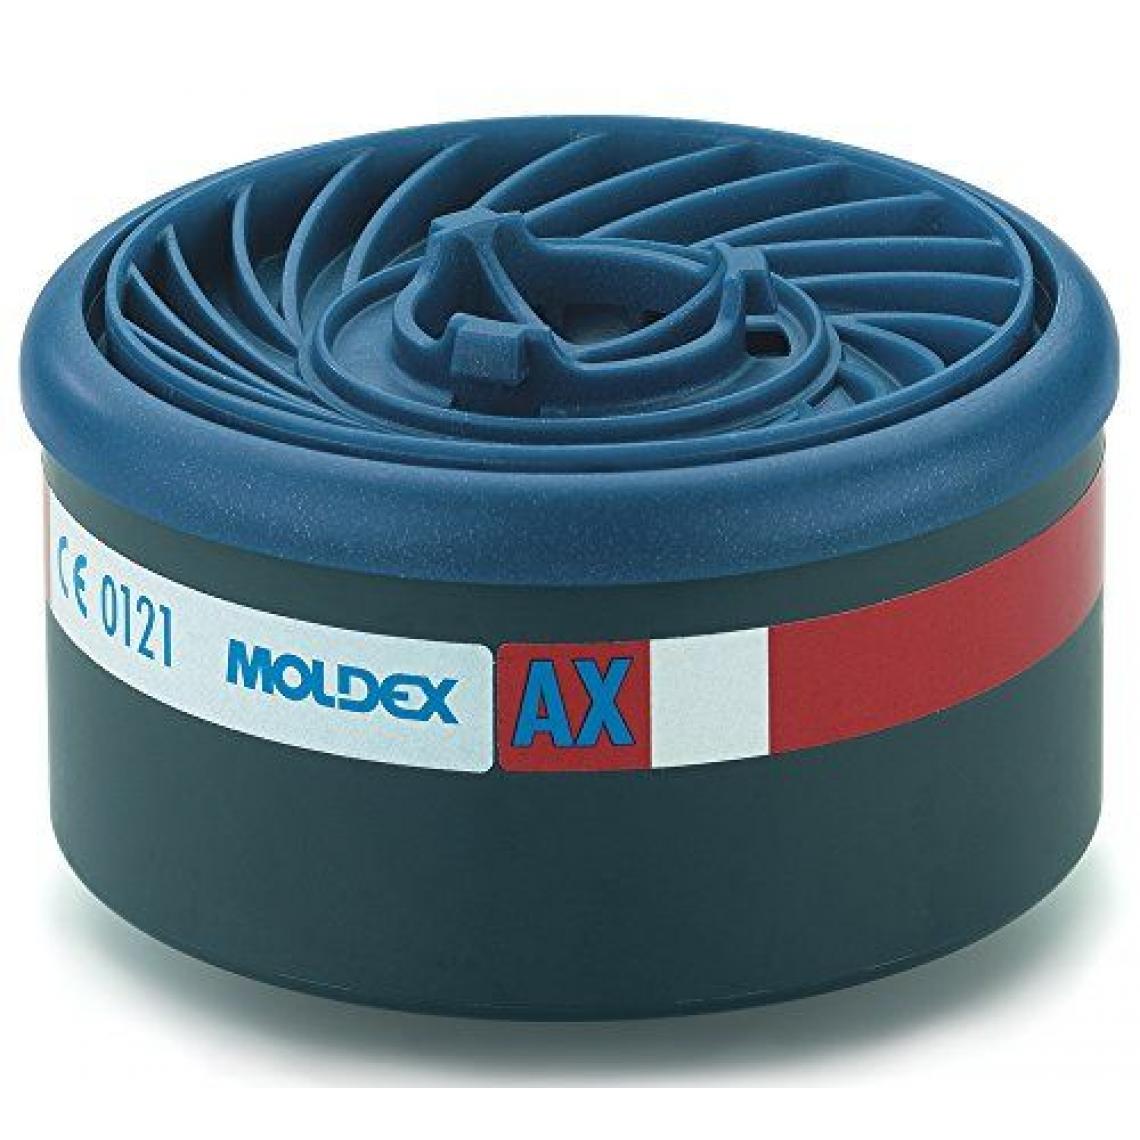 Inconnu - Set de 8 filtres à gaz EasyLock avec Indice de protection: AX Moldex 960001 - Filtre et accessoires refroidissement